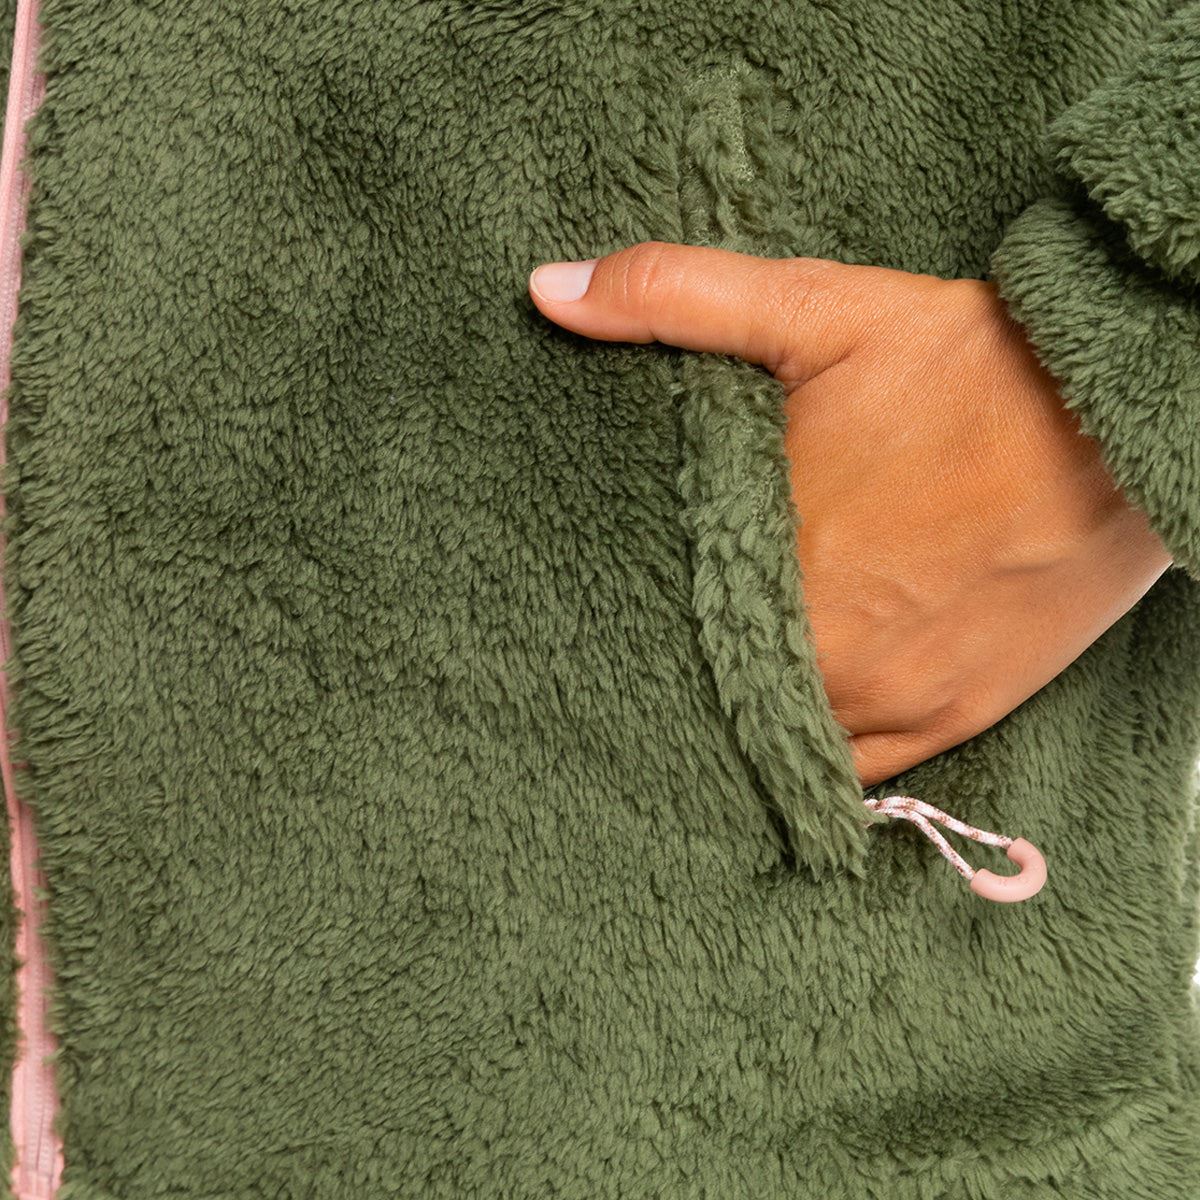 Roxy Alabama Zip Up Fleece Deep Lichen Green - Womens